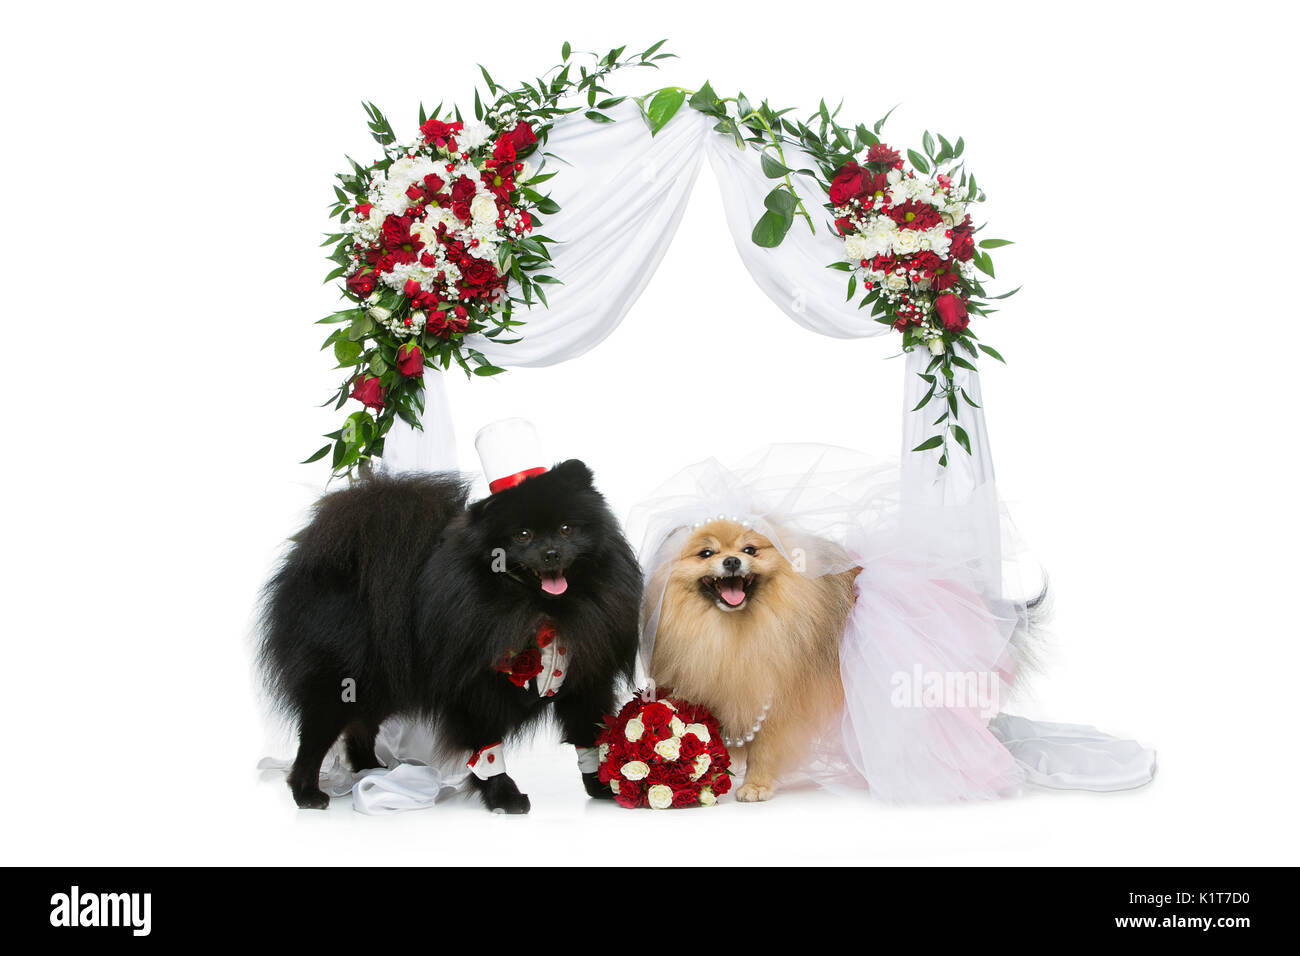 Spitz magnifique wedding couple assis sous l'arche de fleurs isolé sur fond blanc. chien mariée en jupe et voile. marié en costume et chapeau de soie heureux. Banque D'Images